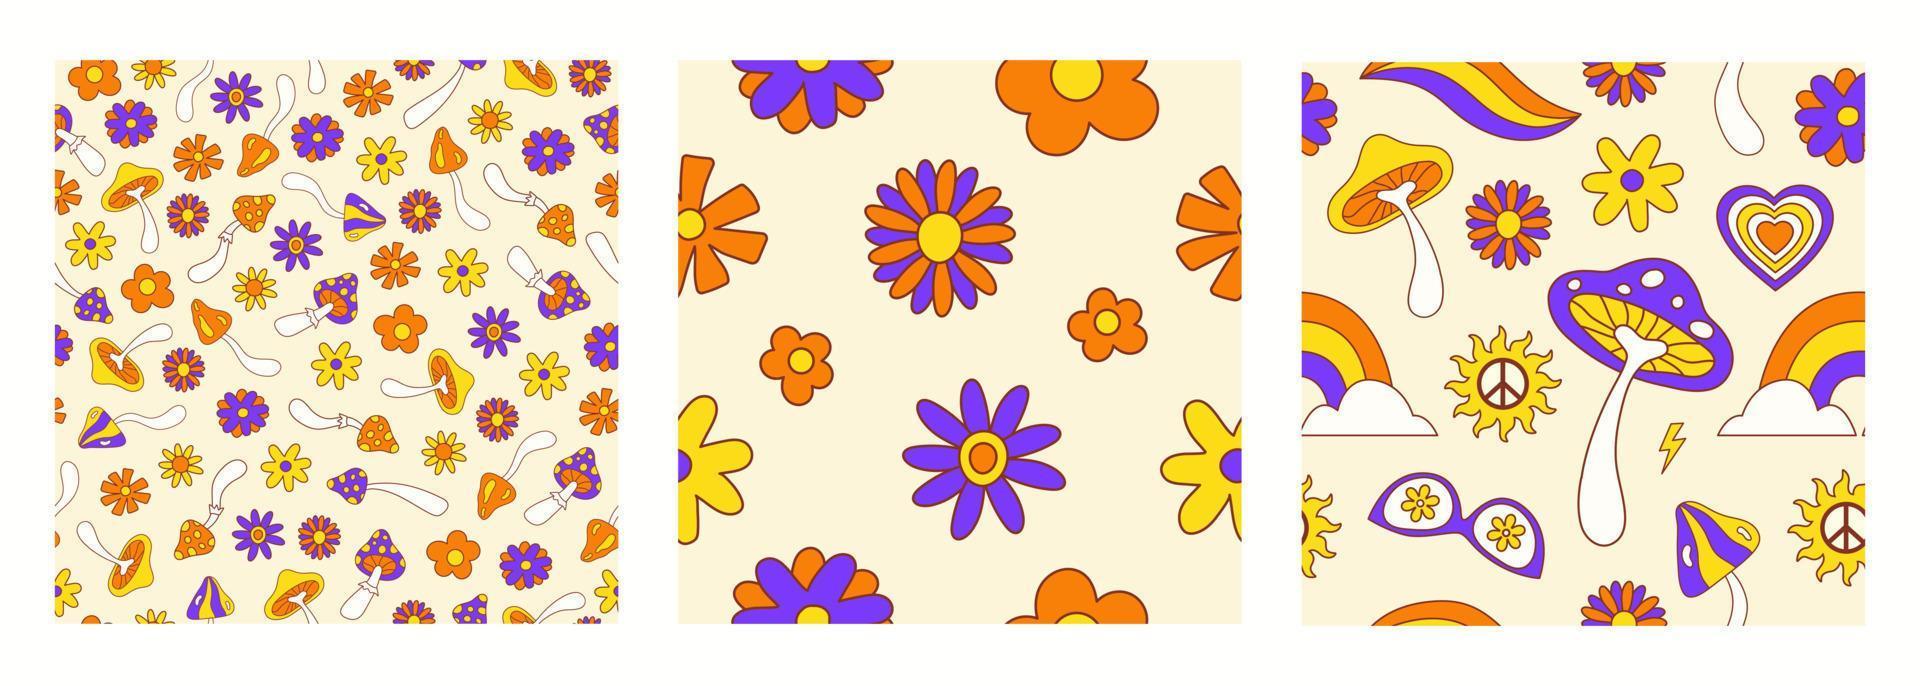 retro uppsättning häftig sömlös mönster med blommor och svamp på en ljus bakgrund. vektor illustration i stil hippie 70-talet, 80s